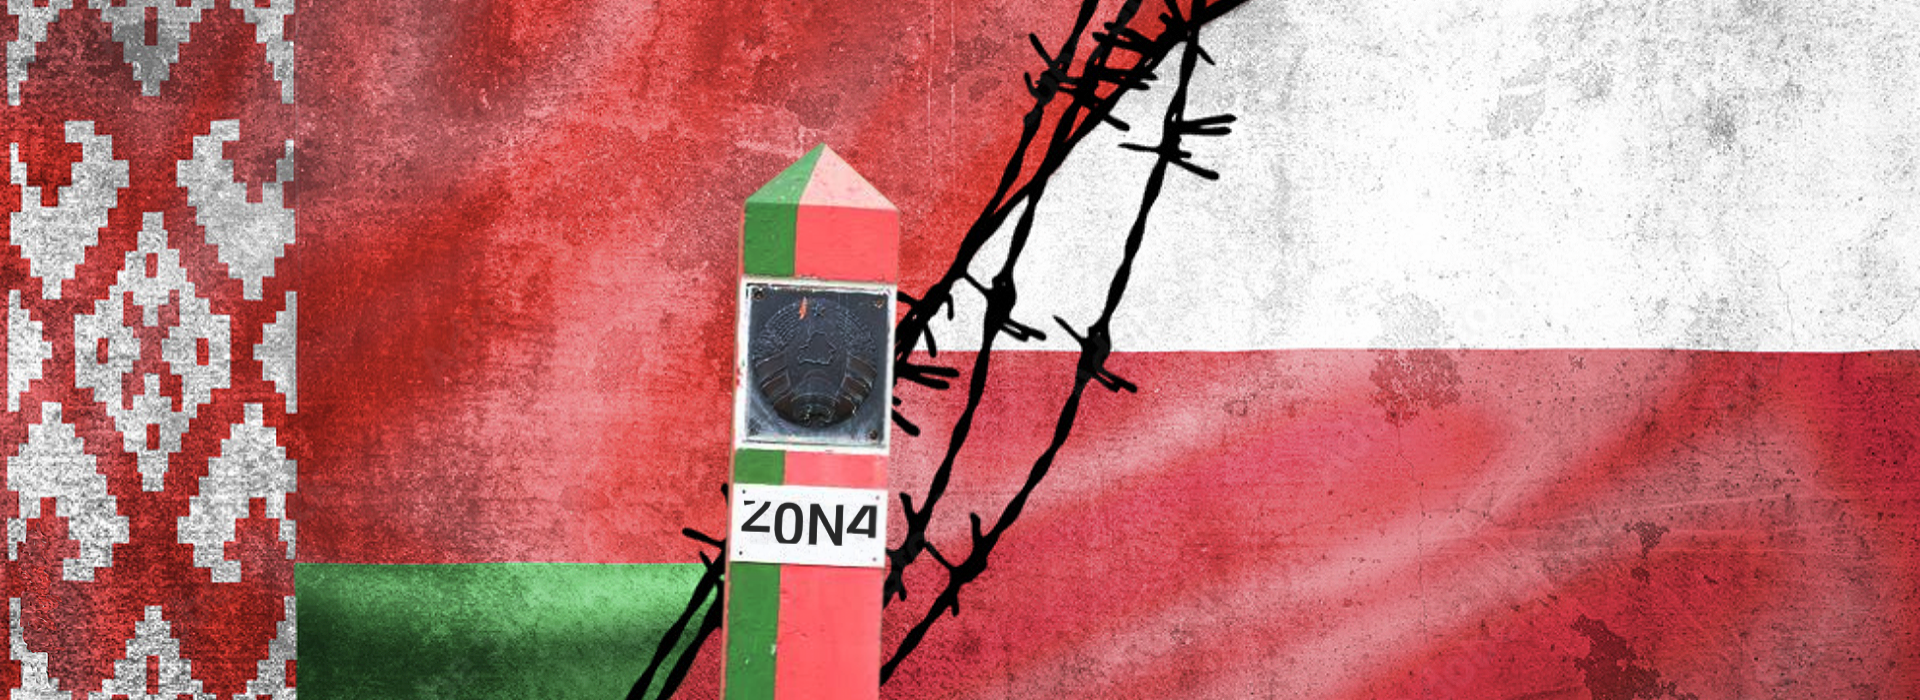 Rozmowa z autorami reportażu "Zona. Historie ze strefy zamkniętej”